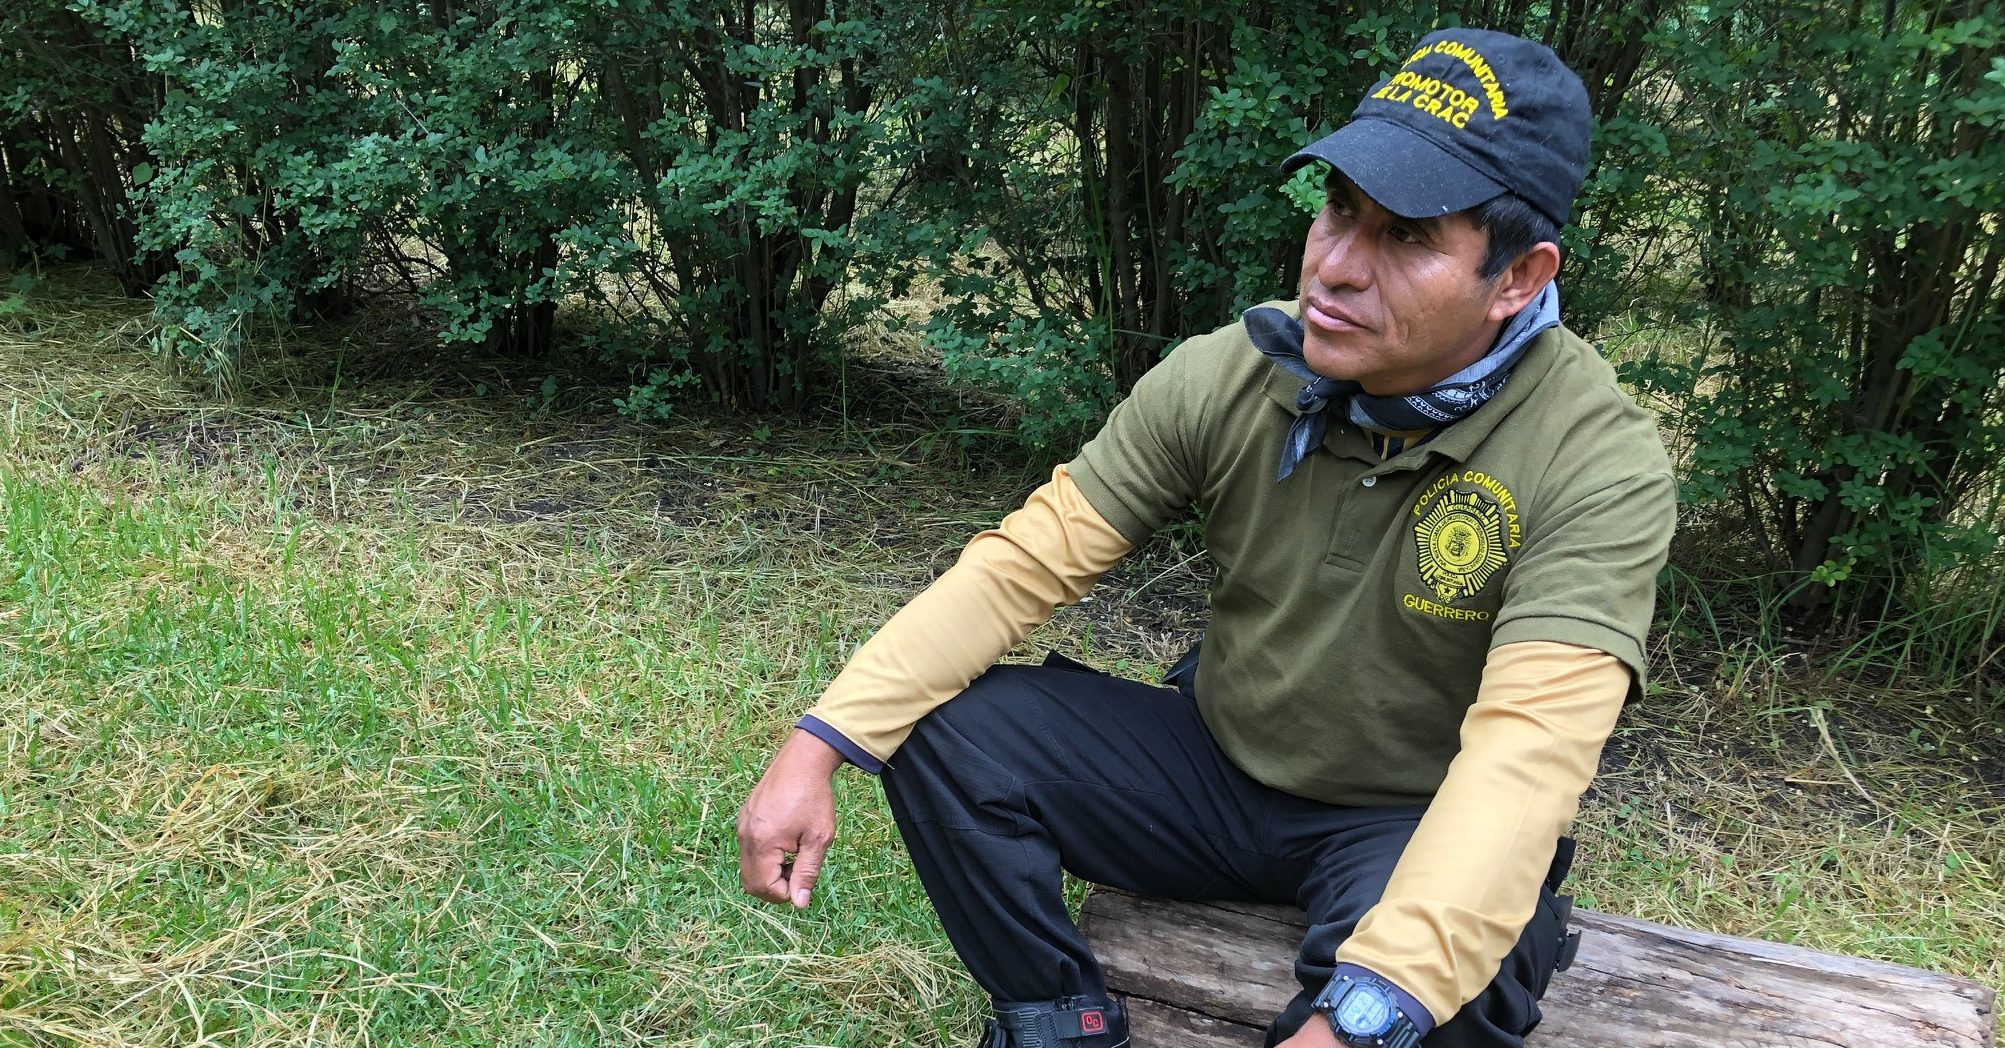 Guerrero community police spokesman to sue the state